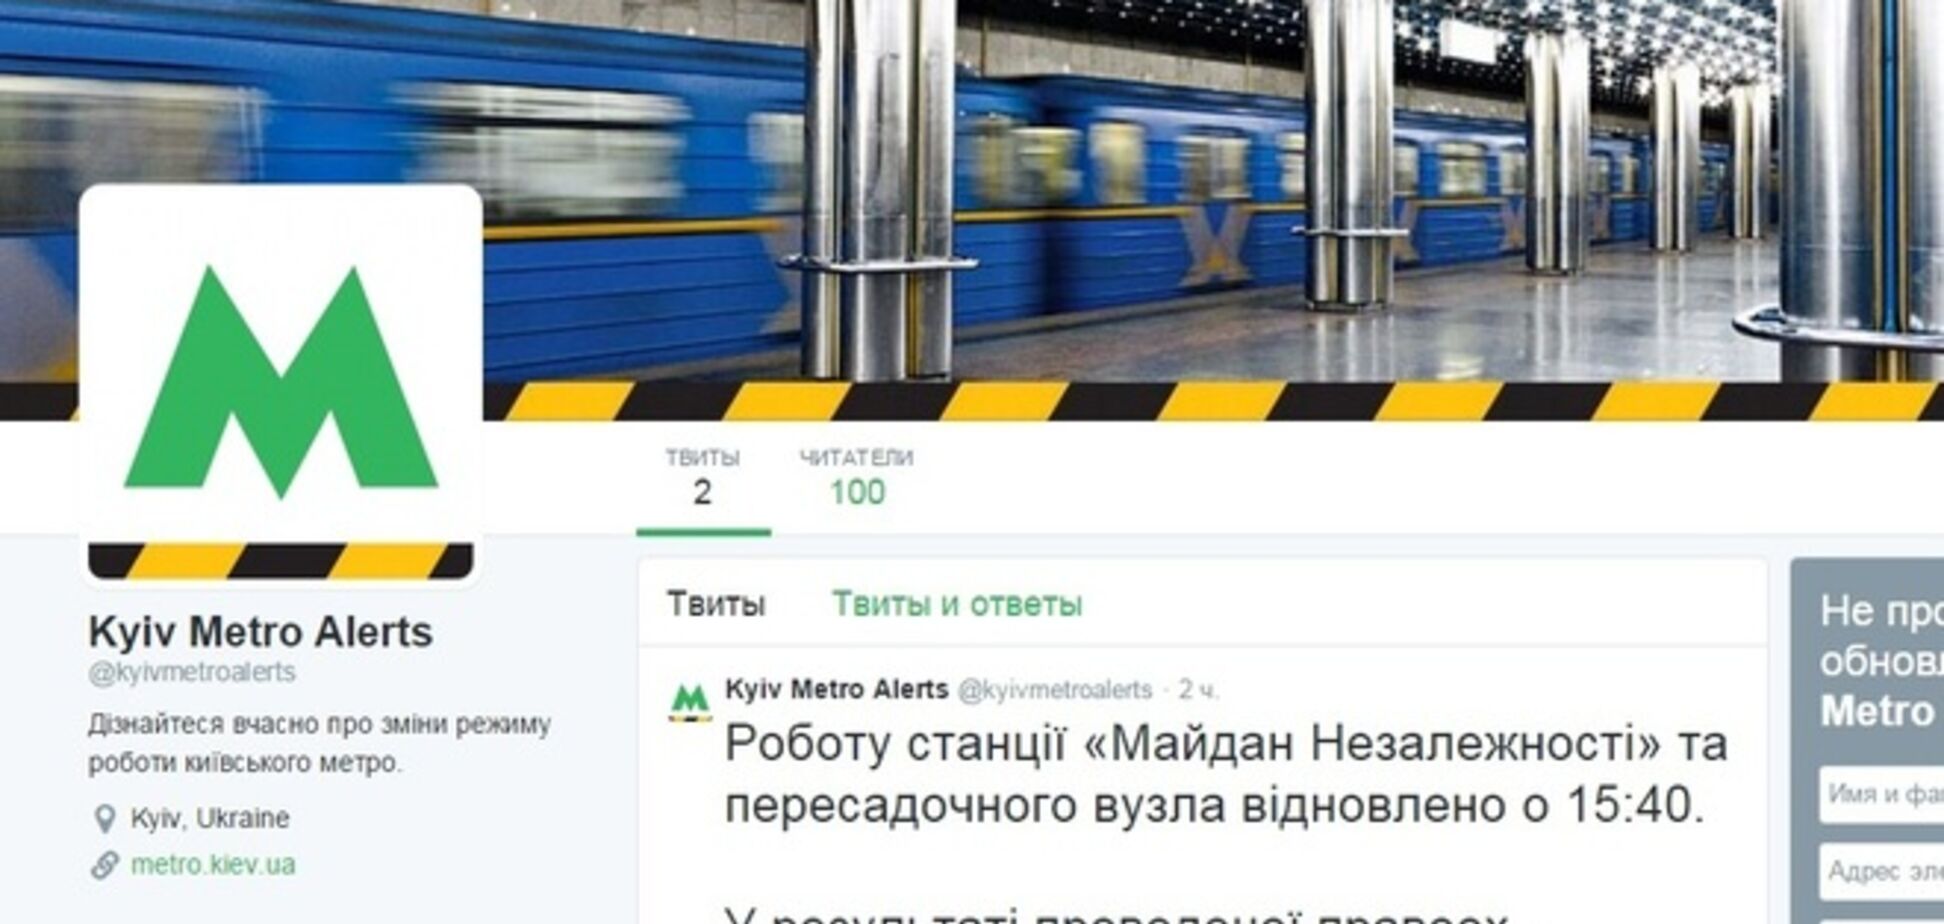 Киевское метро появилось в Twitter